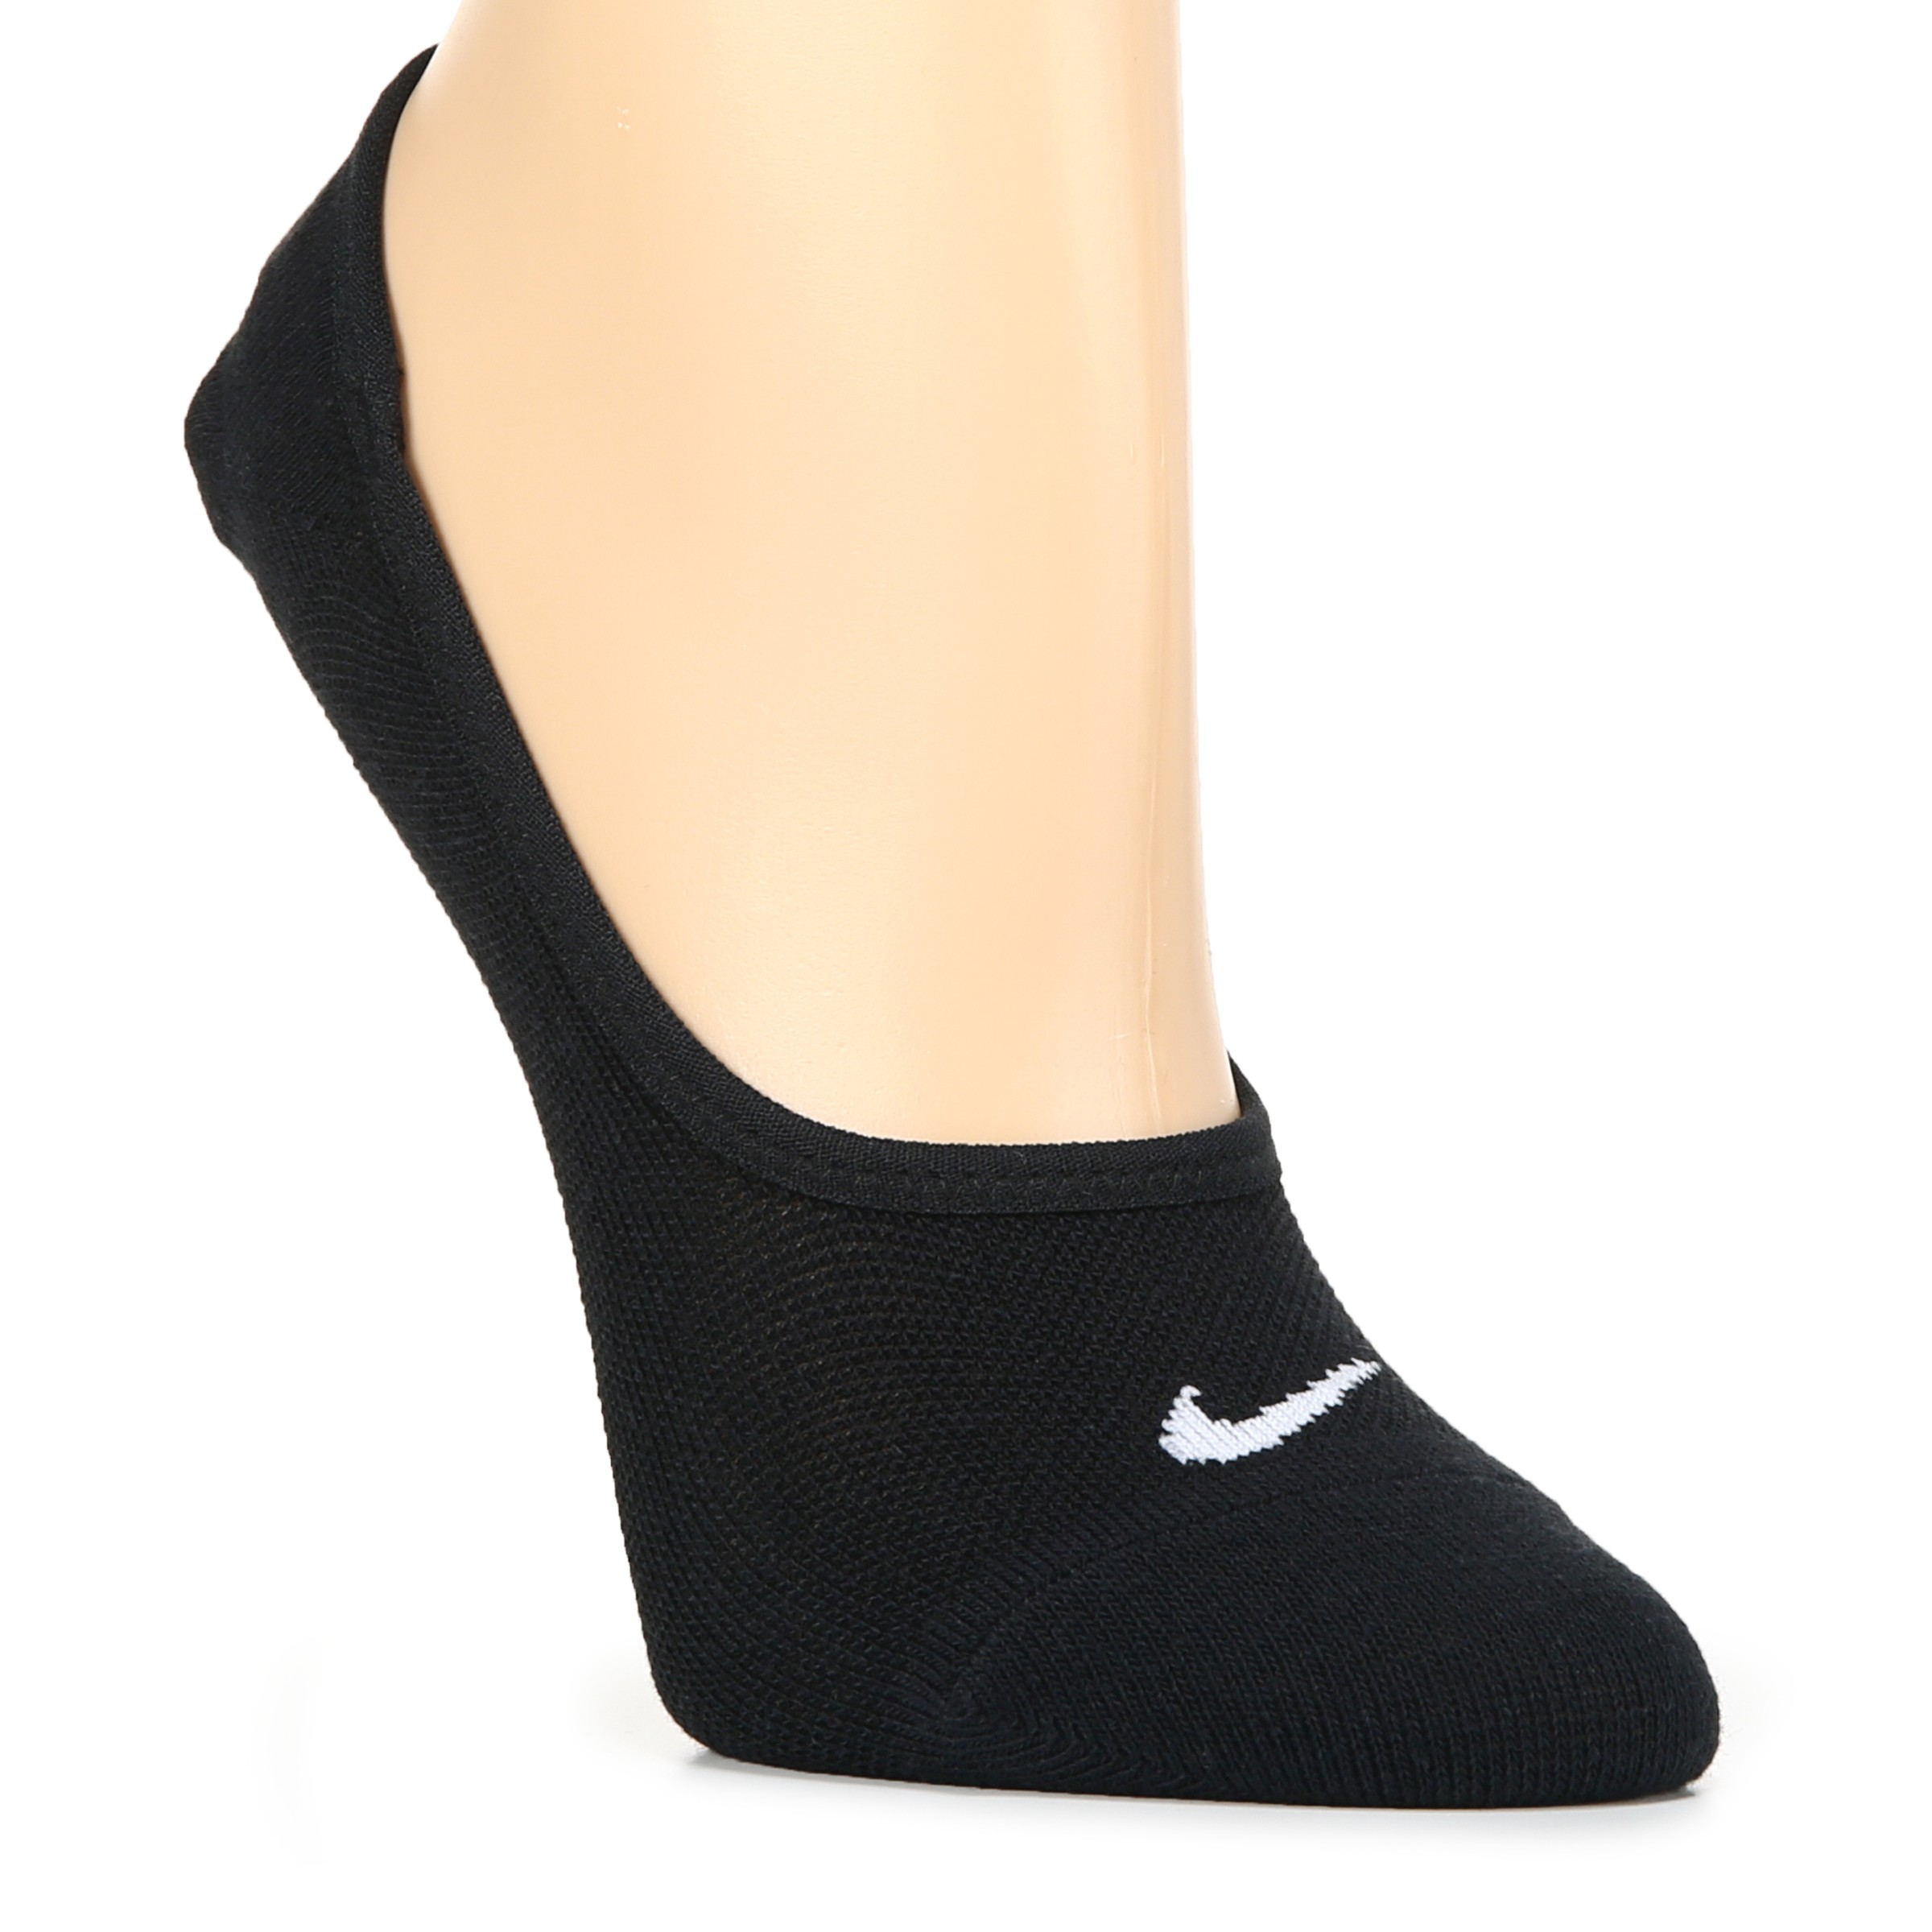 Women's 3 Pack Everyday Lightweight Footie Liner Socks